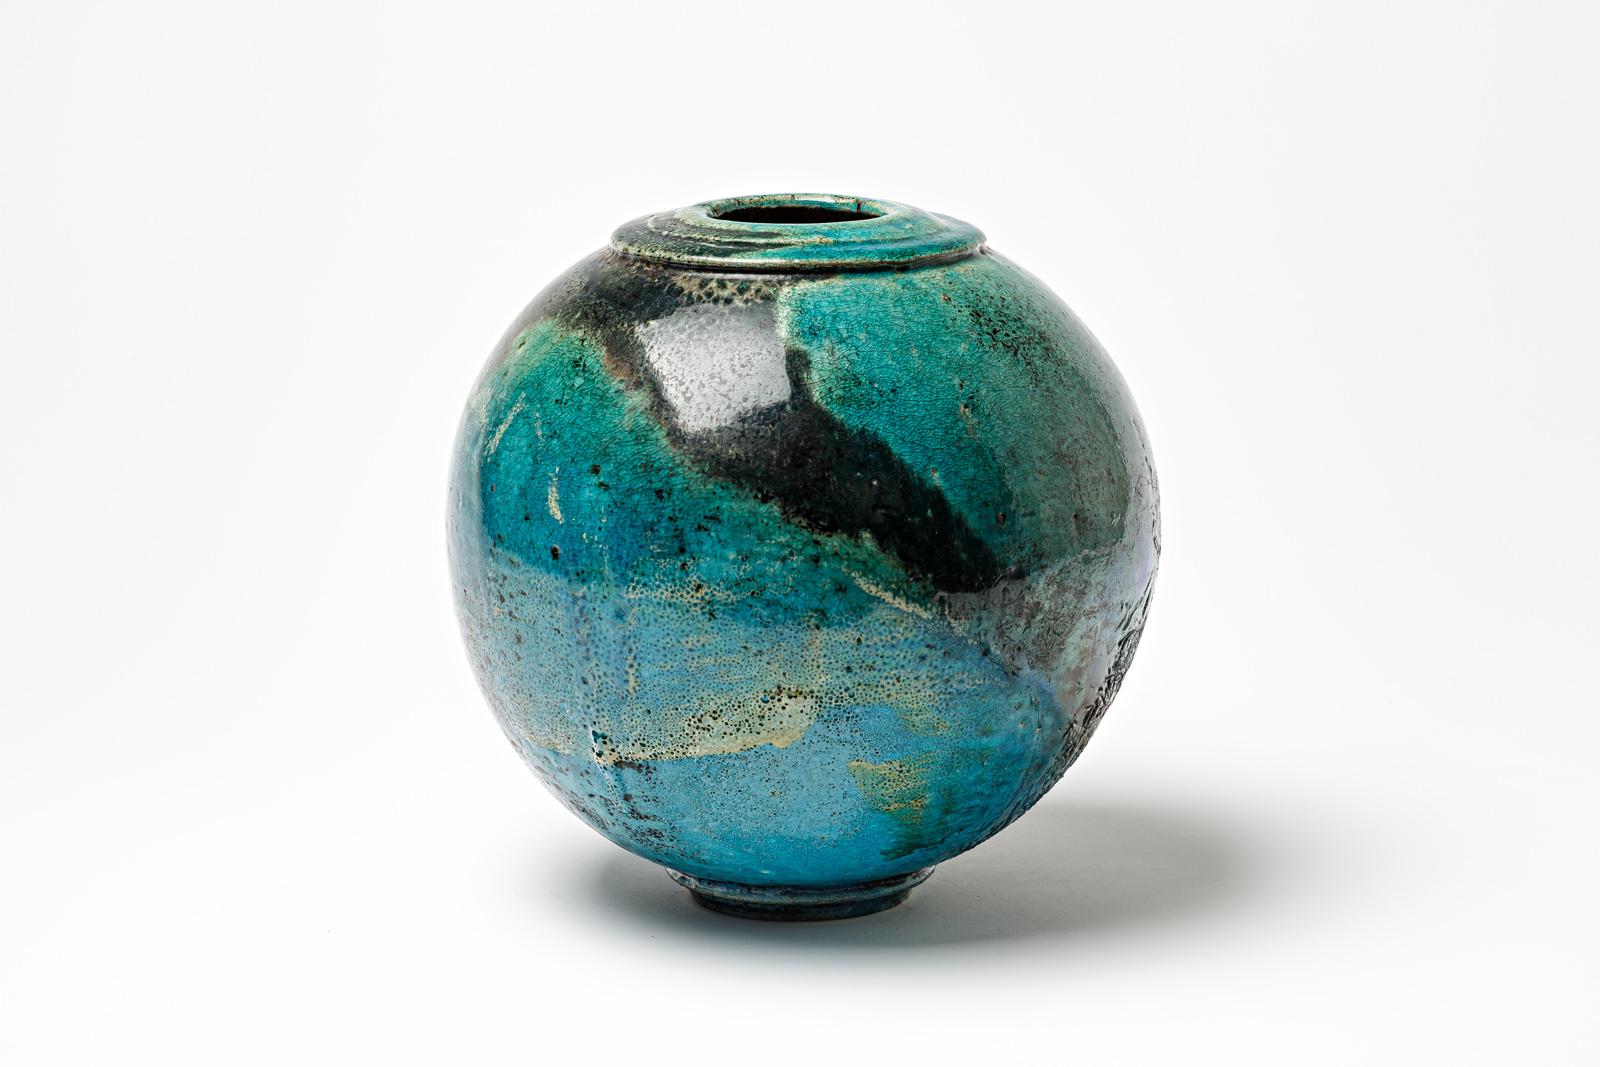 Vase boule en céramique émaillée bleu/vert et noir de Gisèle Buthod Garçon. 
Raku a tiré. Monogramme de l'artiste sous la base. Vers 1980-1990.
H : 9.8' x 9.1' pouces.
